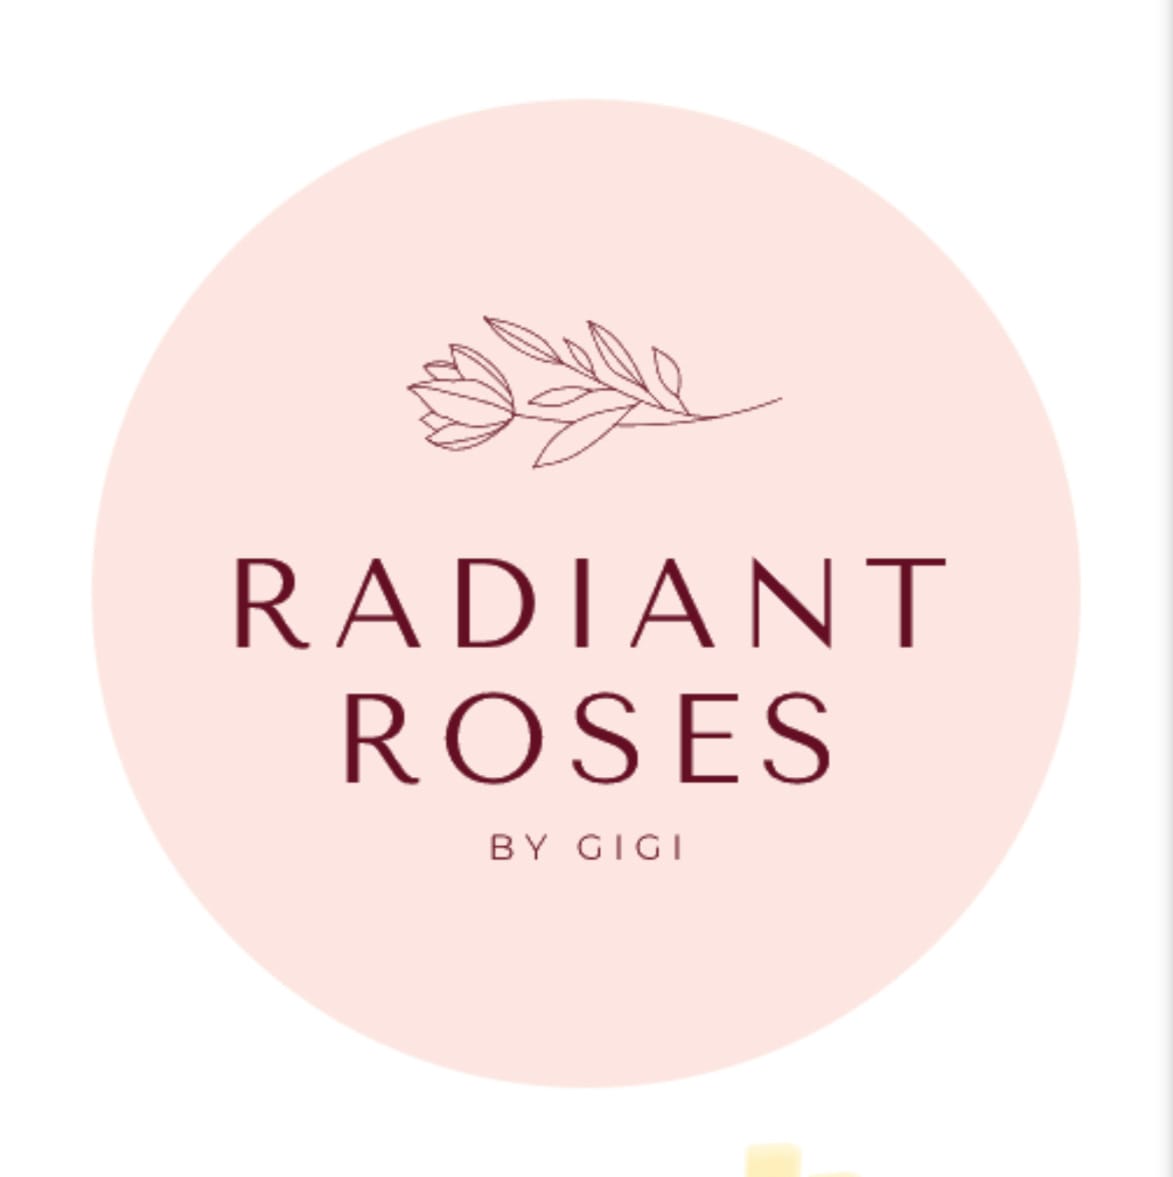 Radiant Roses by Gigi